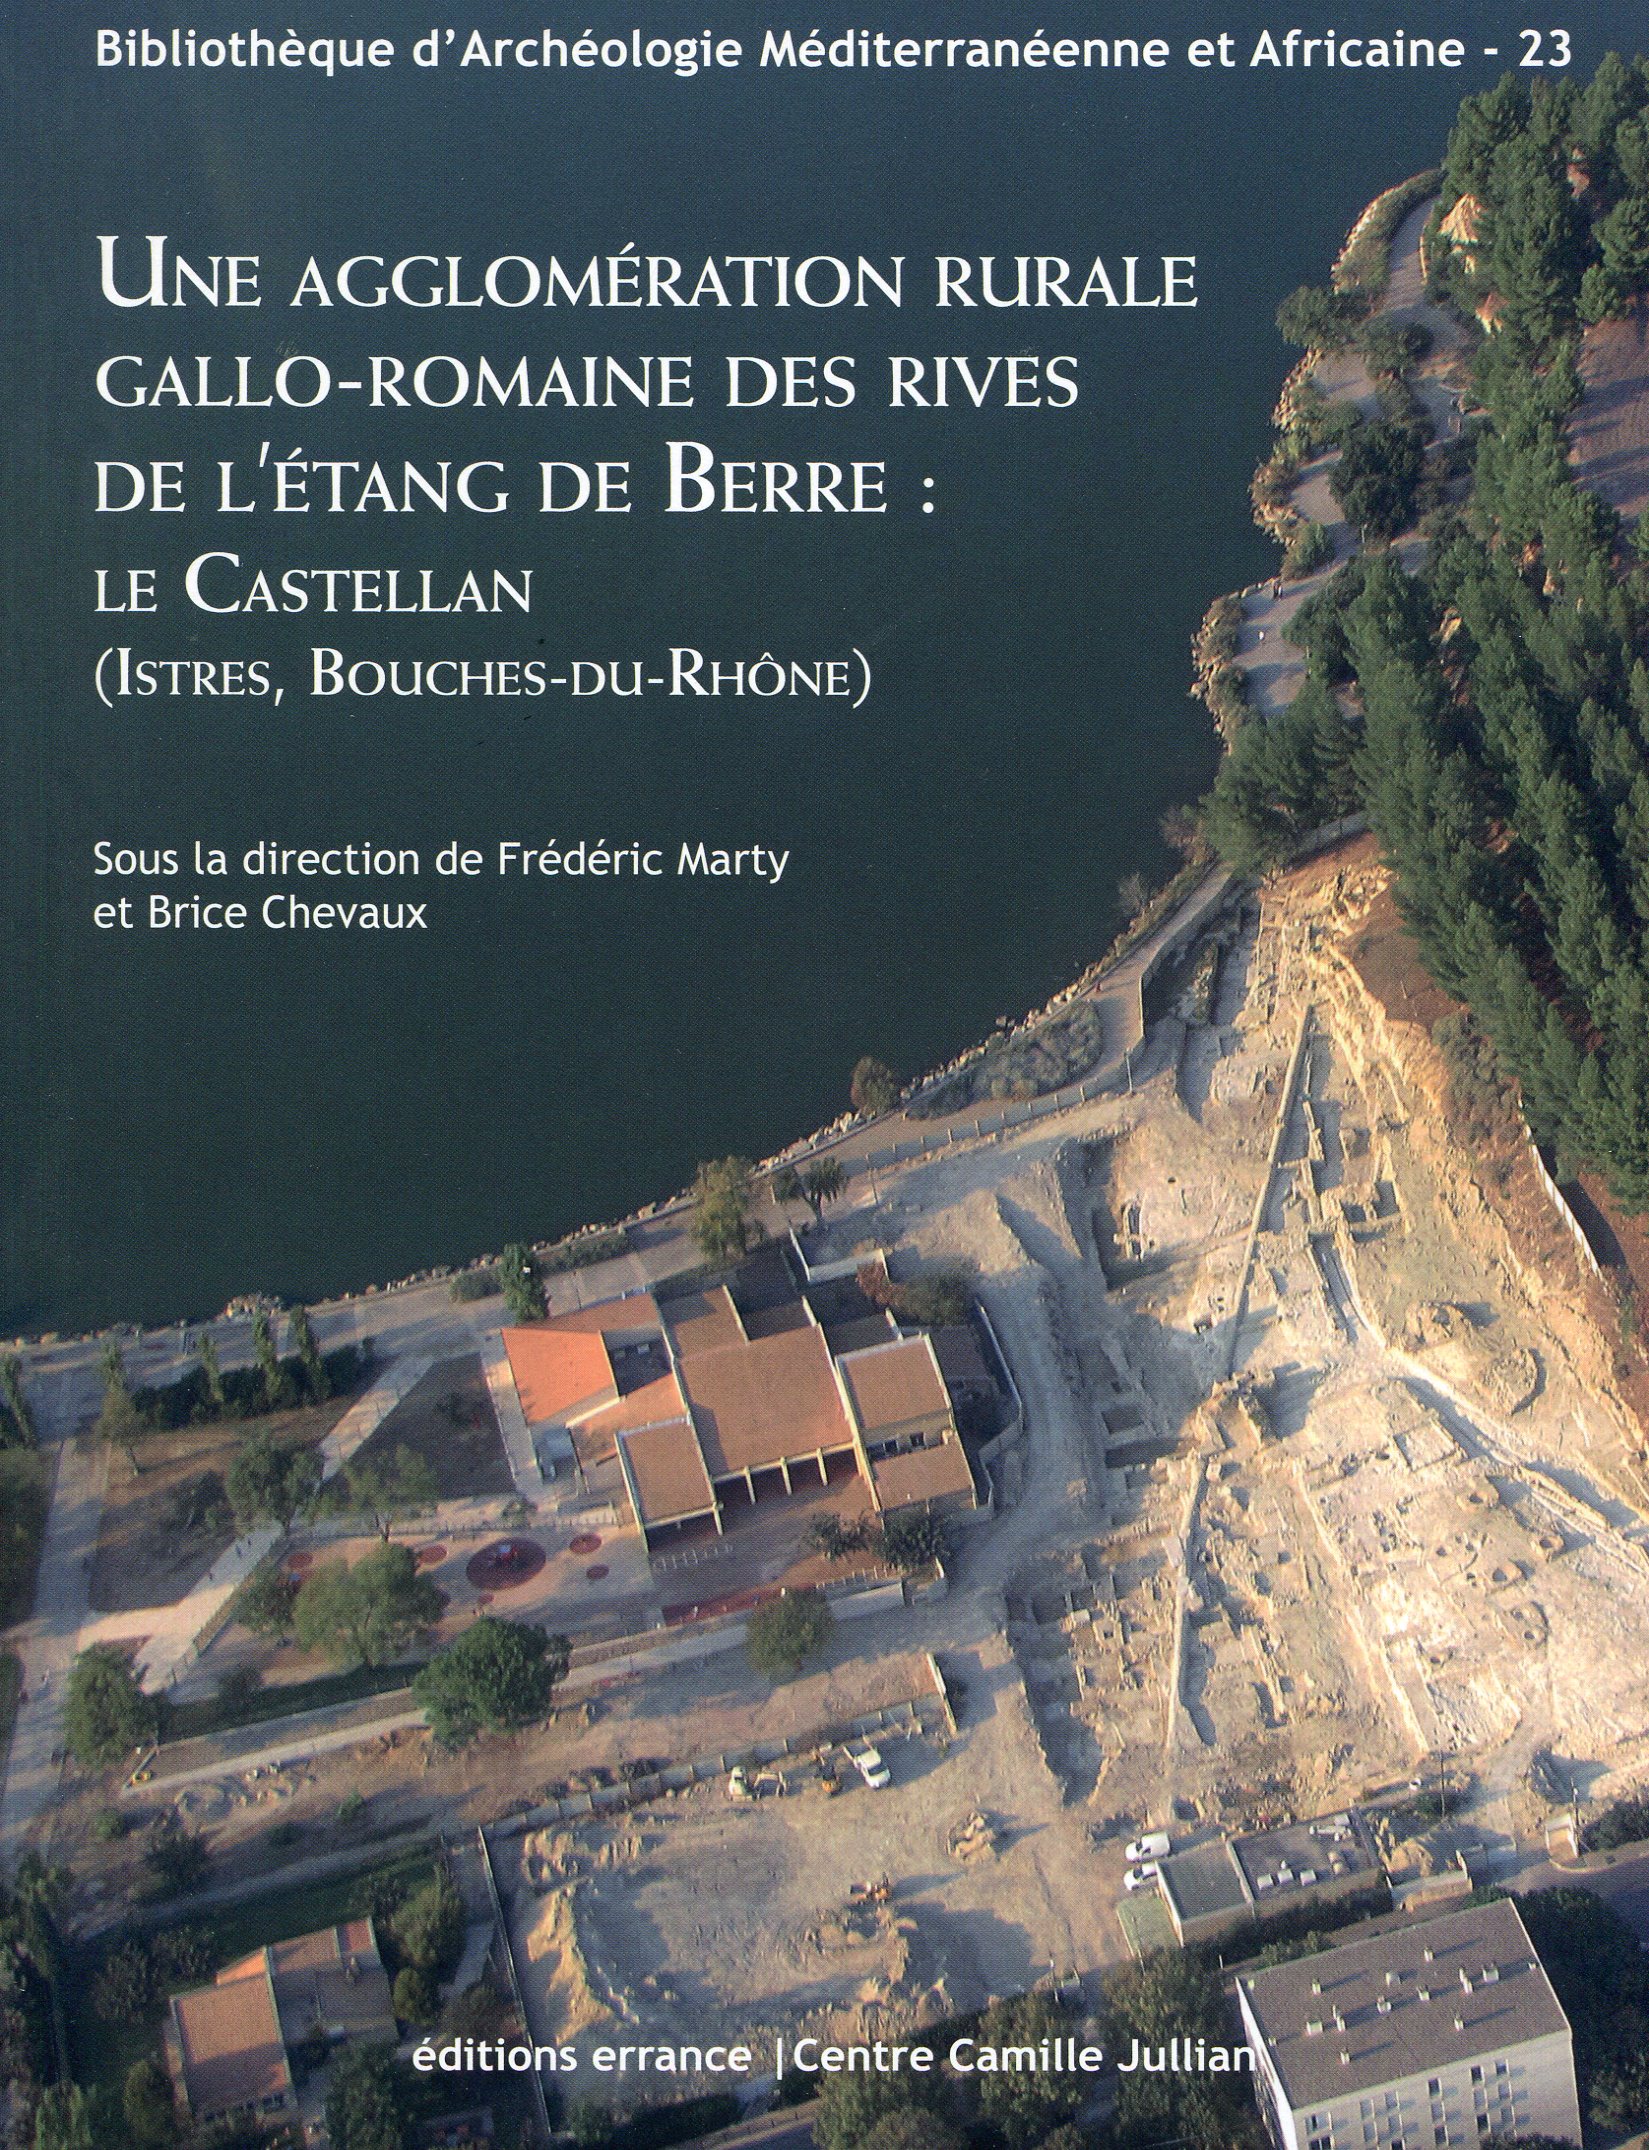 Une agglomération rurale gallo-romaine des rives de l'étang de Berre : Le Castellan (Istres, Bouches-du-Rhône), 2017, 300 p.